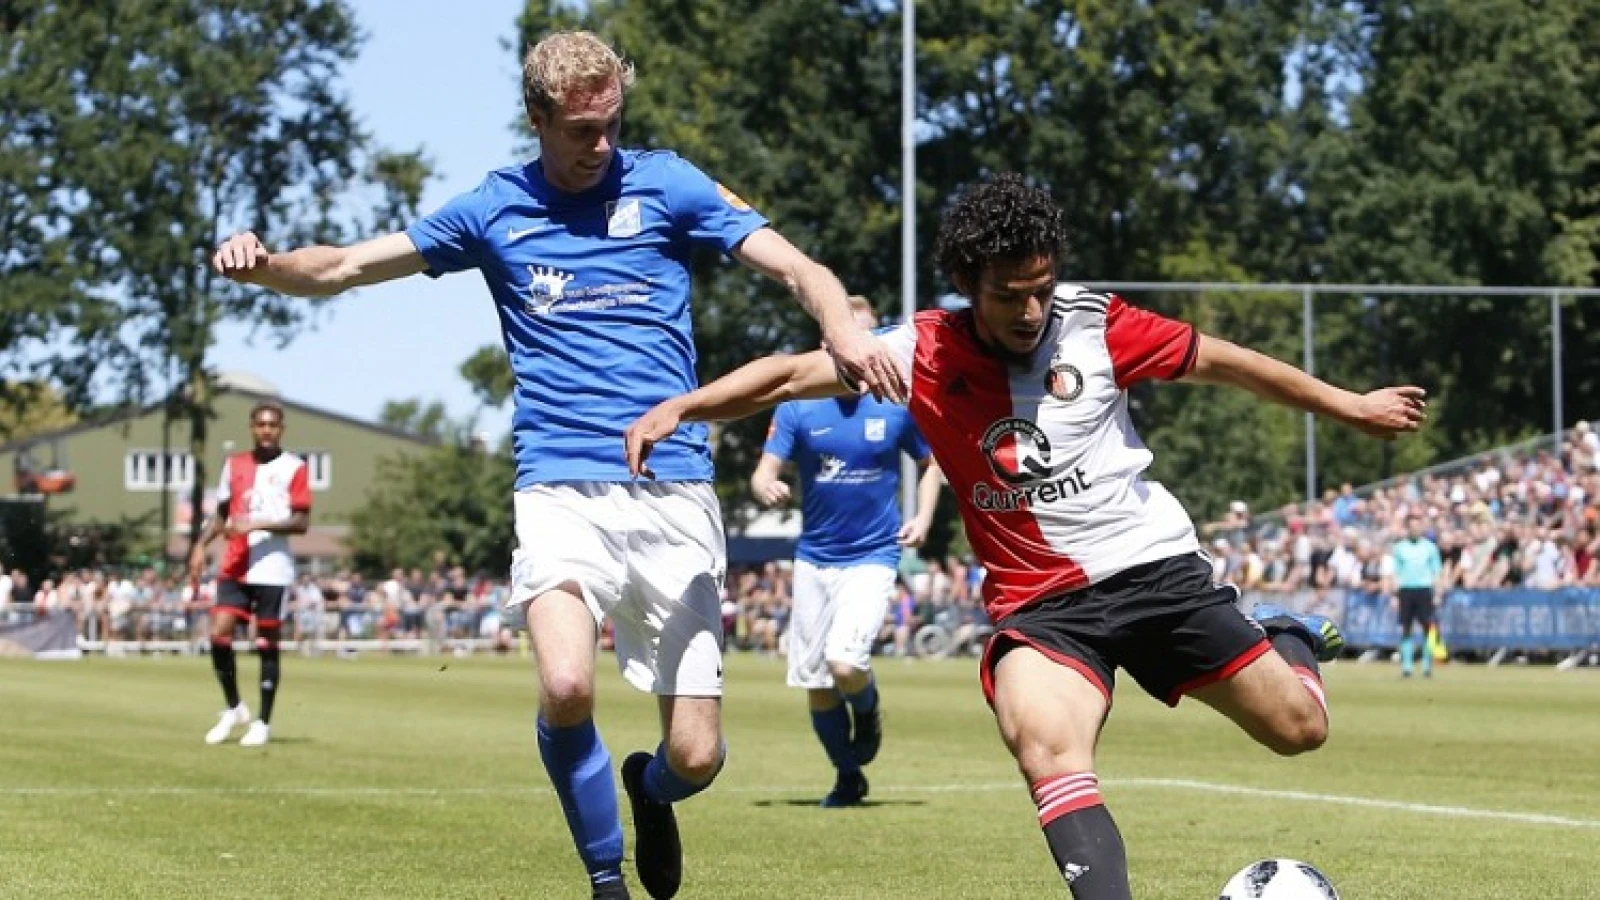 LIVE | Zeeuws Elftal - Feyenoord 0-2 | Einde wedstrijd